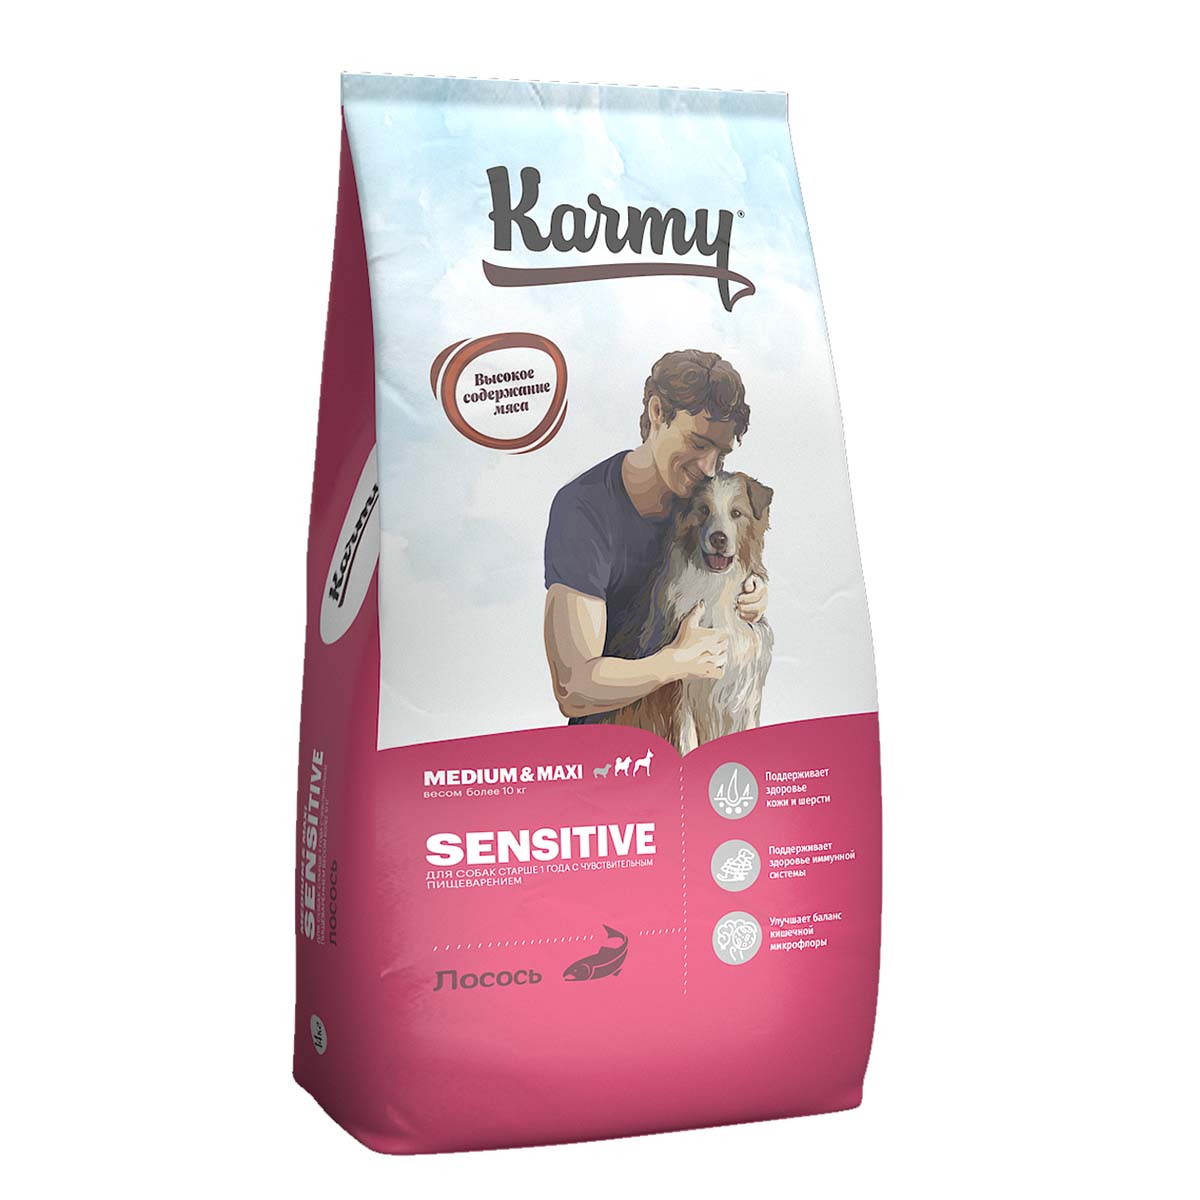 KARMY Medium&Maxi Sensitive Лосось. Корм для собак средних и крупных пород с чувствительным пищеварением Вес 14 кг